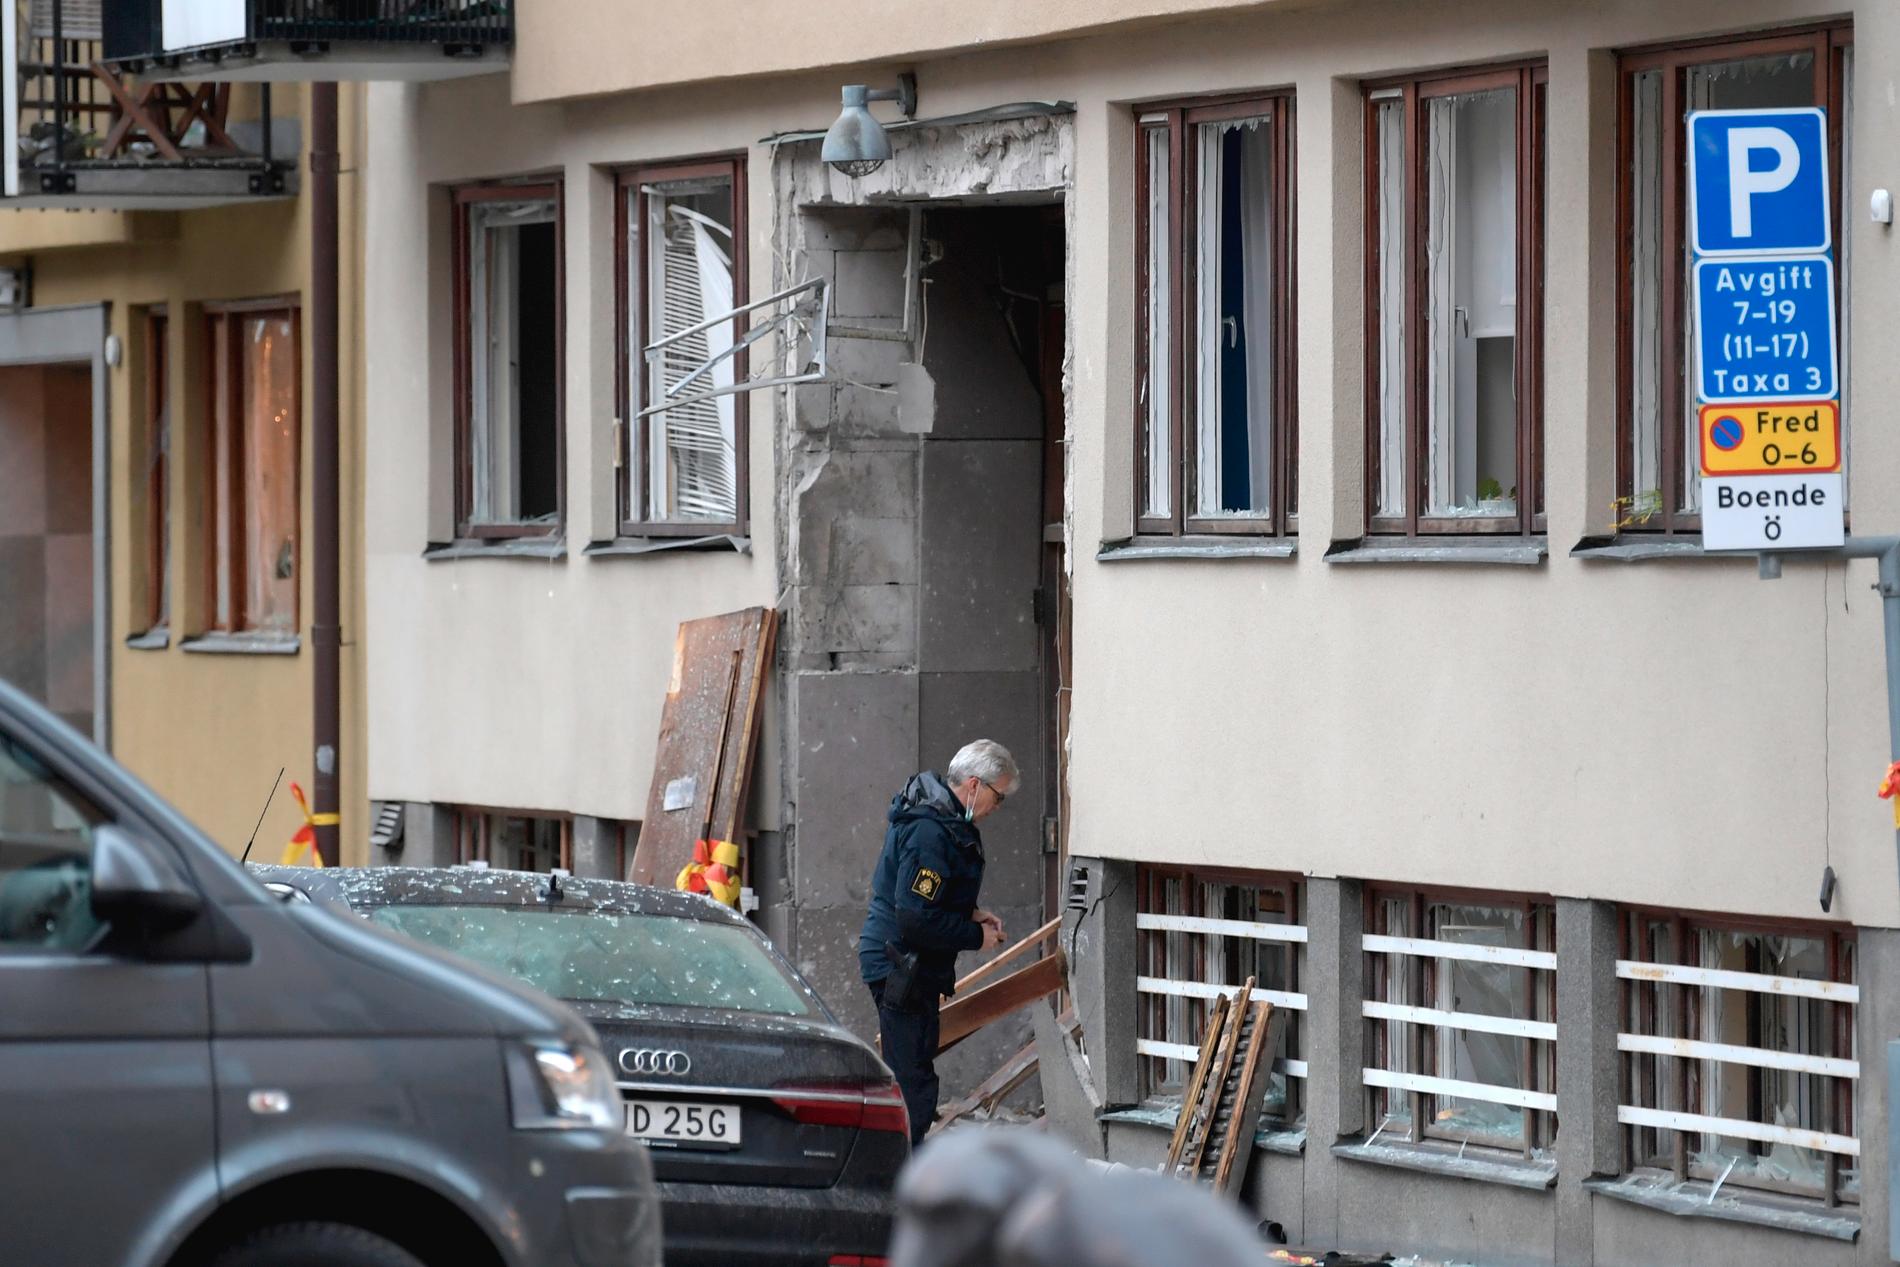 PÅ PLASS: Politiet undersøker en boligblokk på Östermalm i Stockholm, som har fått omfattende skader etter en kraftig eksplosjon. 